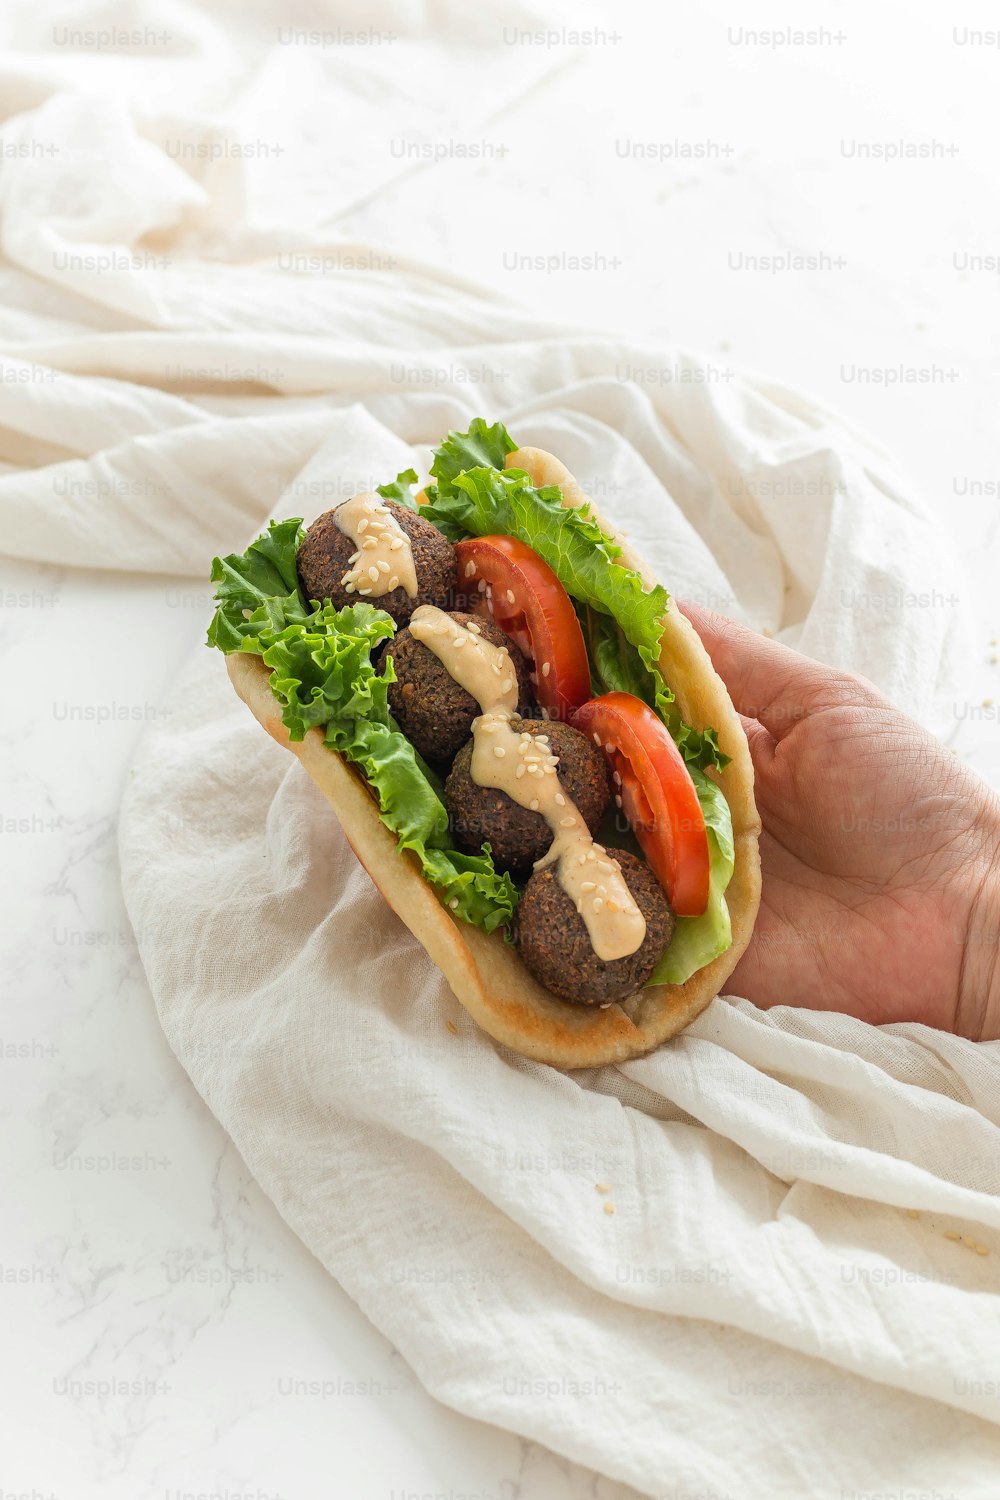 Una mano sosteniendo un sándwich con carne, lechuga y tomates